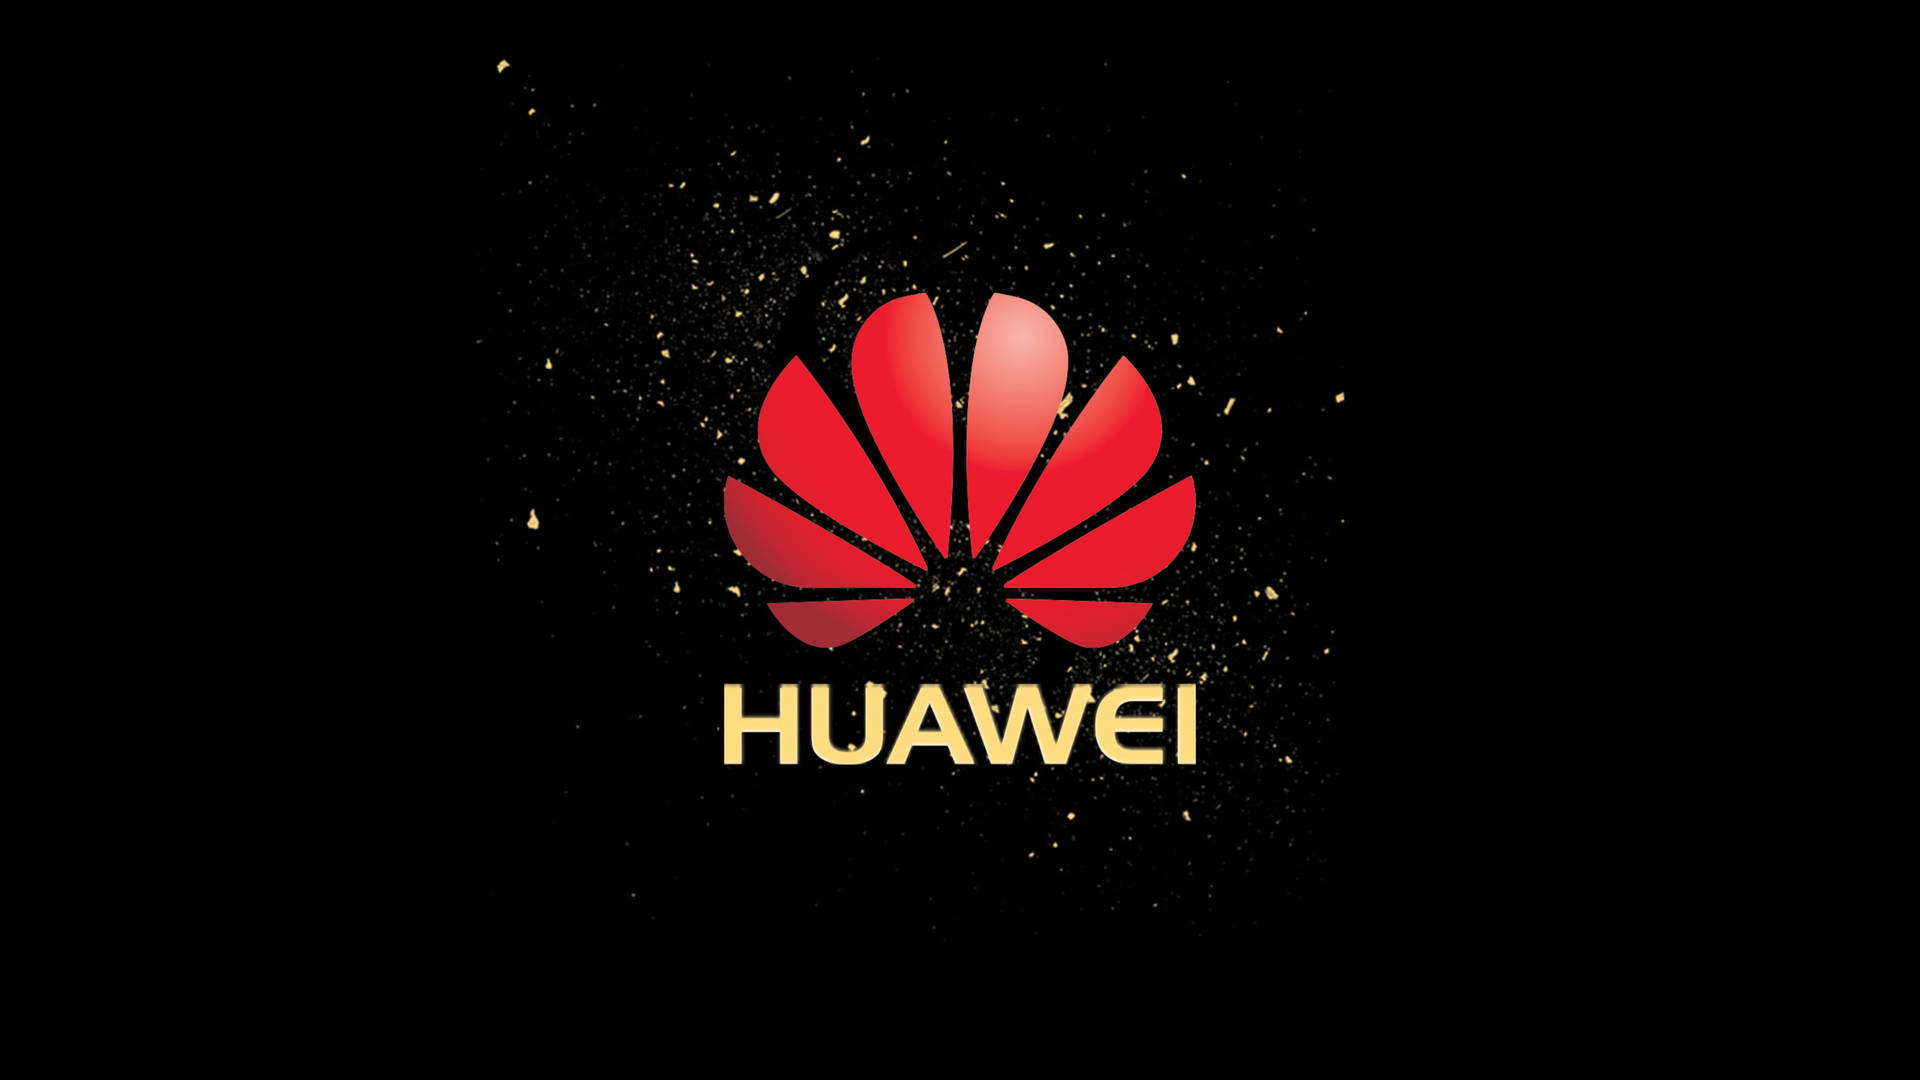 Huawei Technology Dynamic Logo Wallpaper